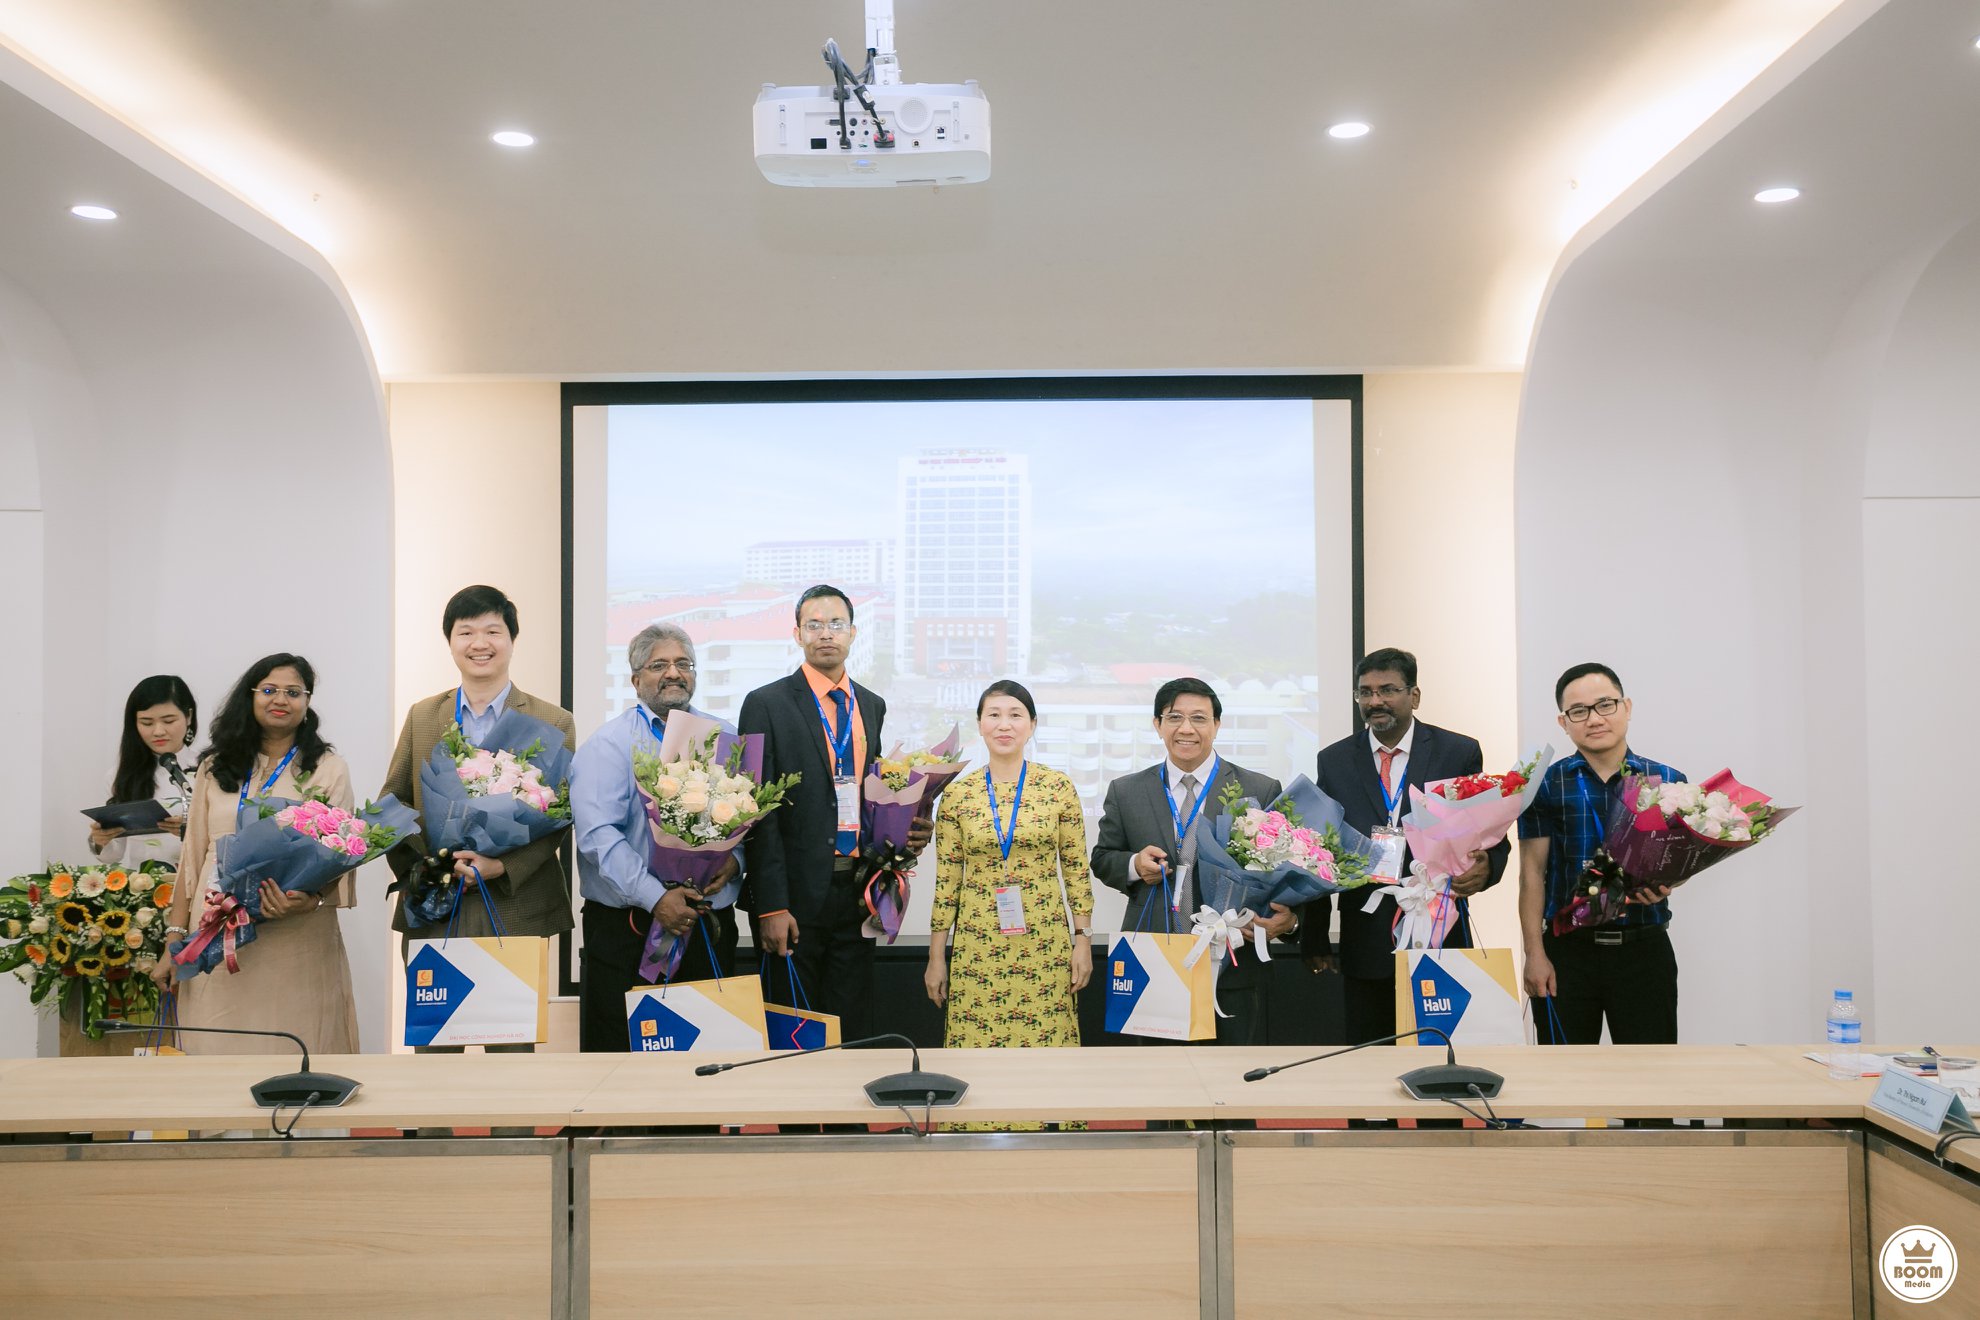 Khai mạc Hội nghị quốc tế về nghiên cứu tính toán thông minh trong kỹ thuật lần thứ IV, năm 2019 tại Đại học Công nghiệp Hà Nội